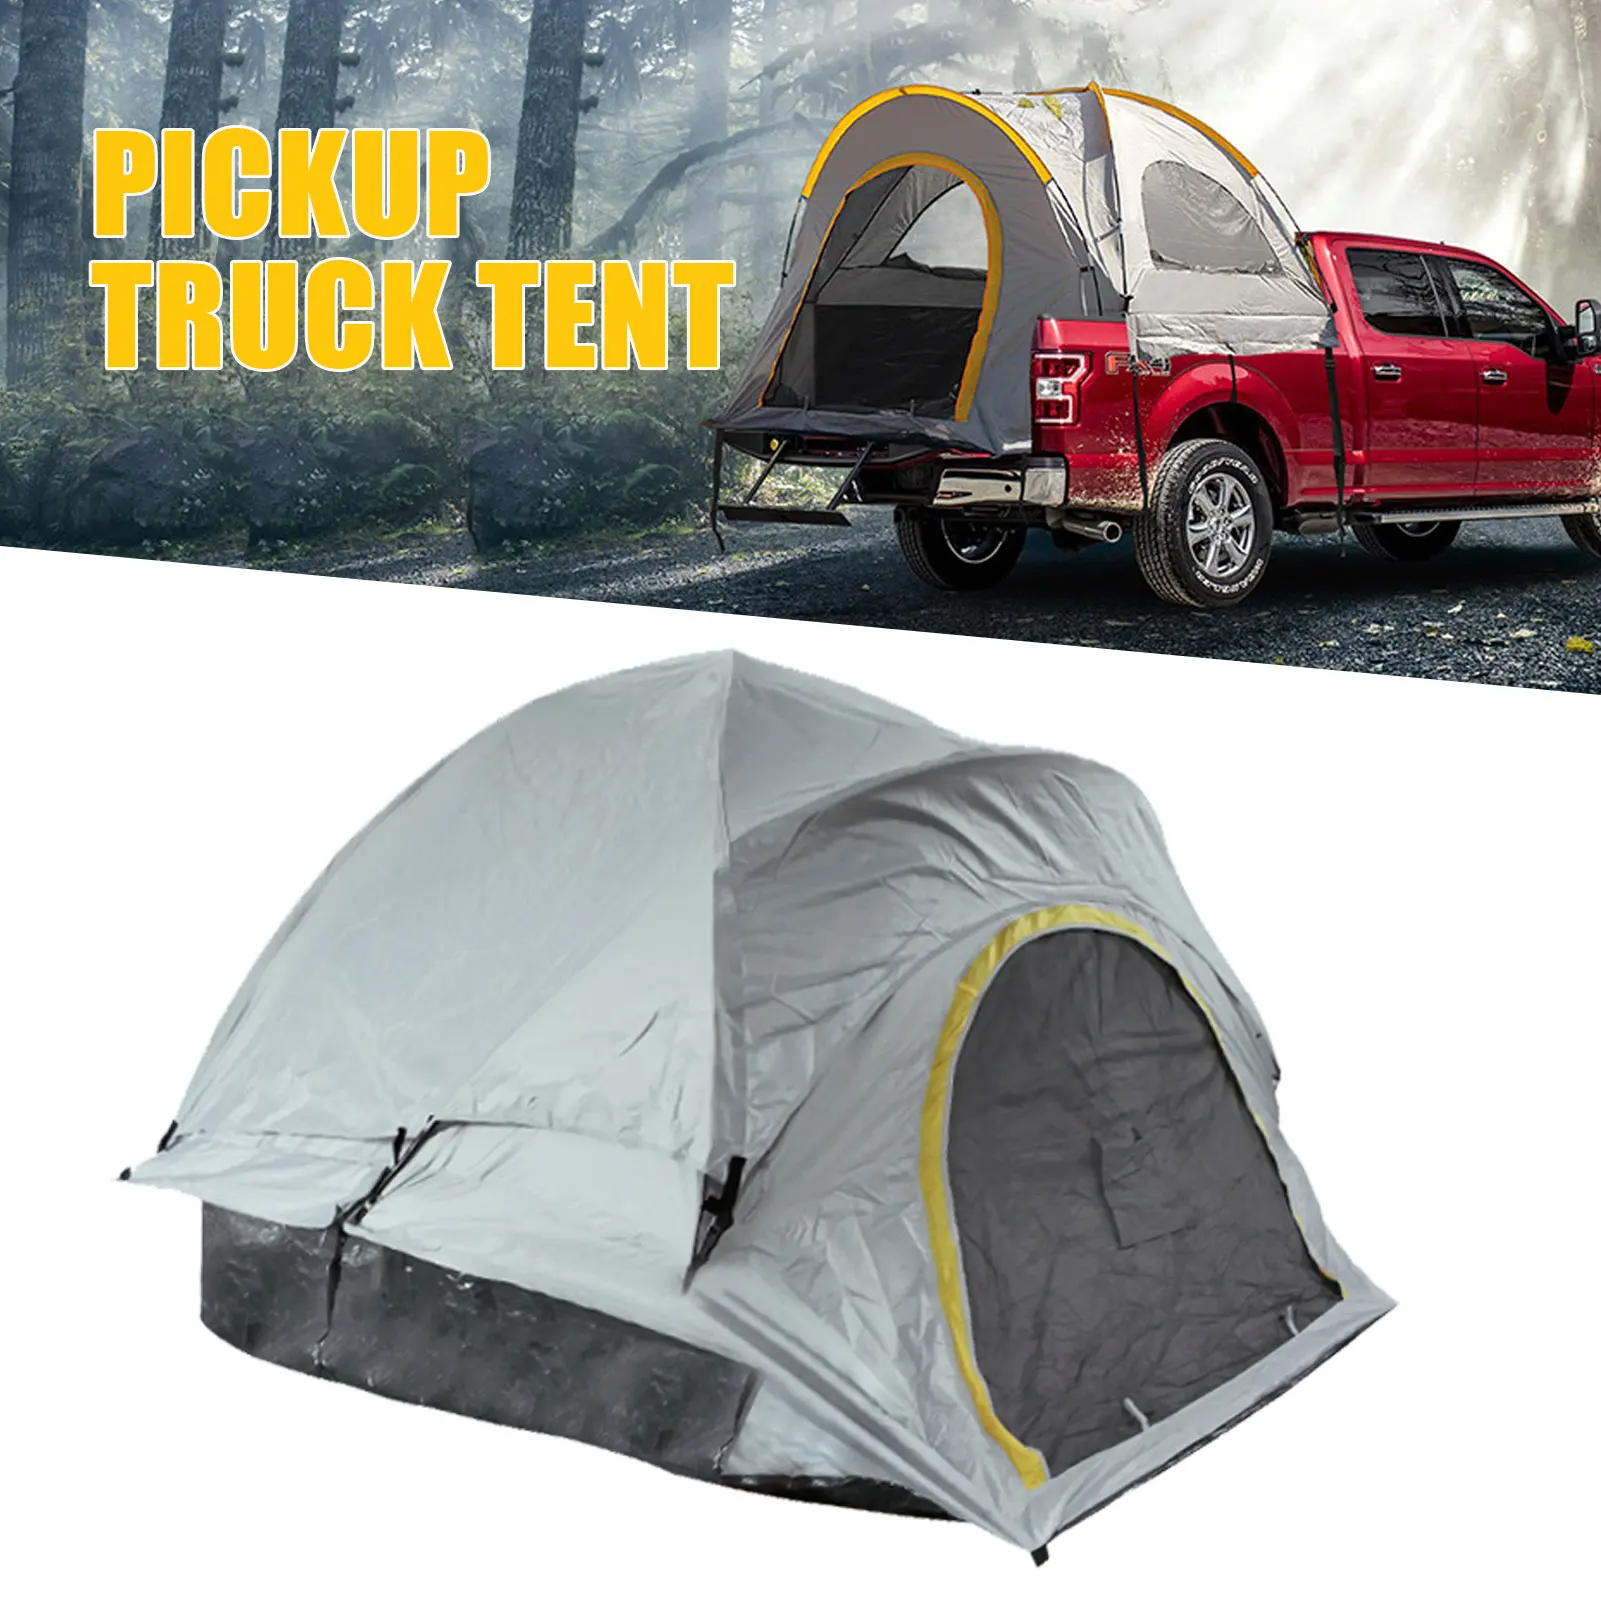 저렴한 픽업 트럭 텐트 캠핑을위한 소형 트럭 텐트 자동차 침대 캠핑 텐트를 설치하기 쉬운 전체 크기 트럭 텐트 두 사람 잠자는 C